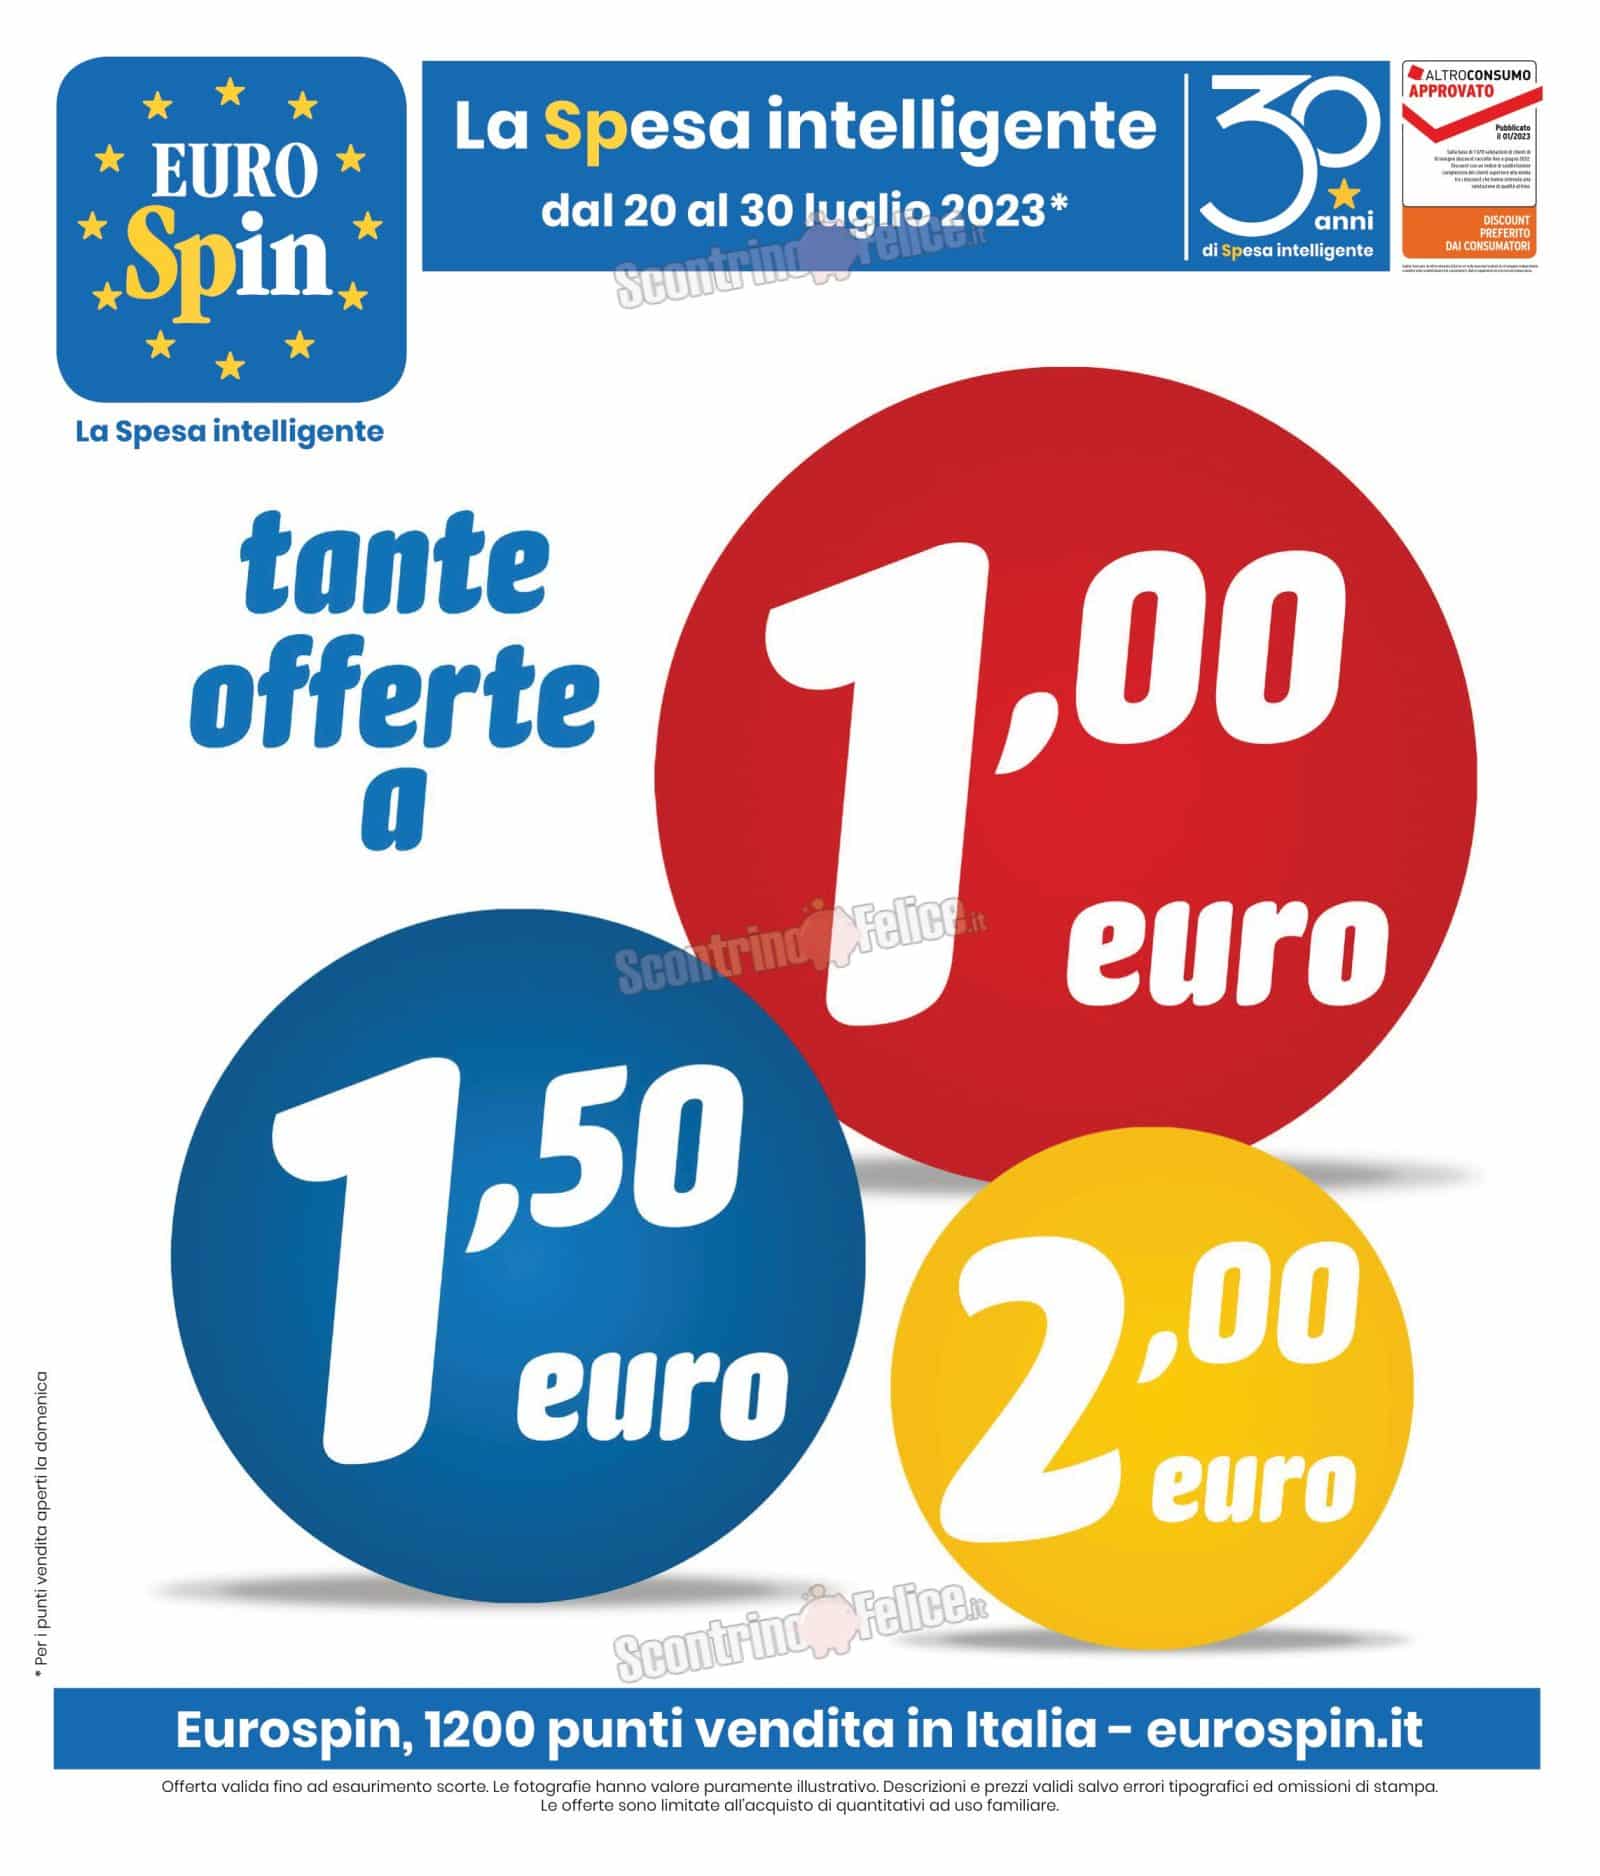 Anteprima Nuovo Volantino Eurospin valido dal 20 al 30 luglio 2023 2